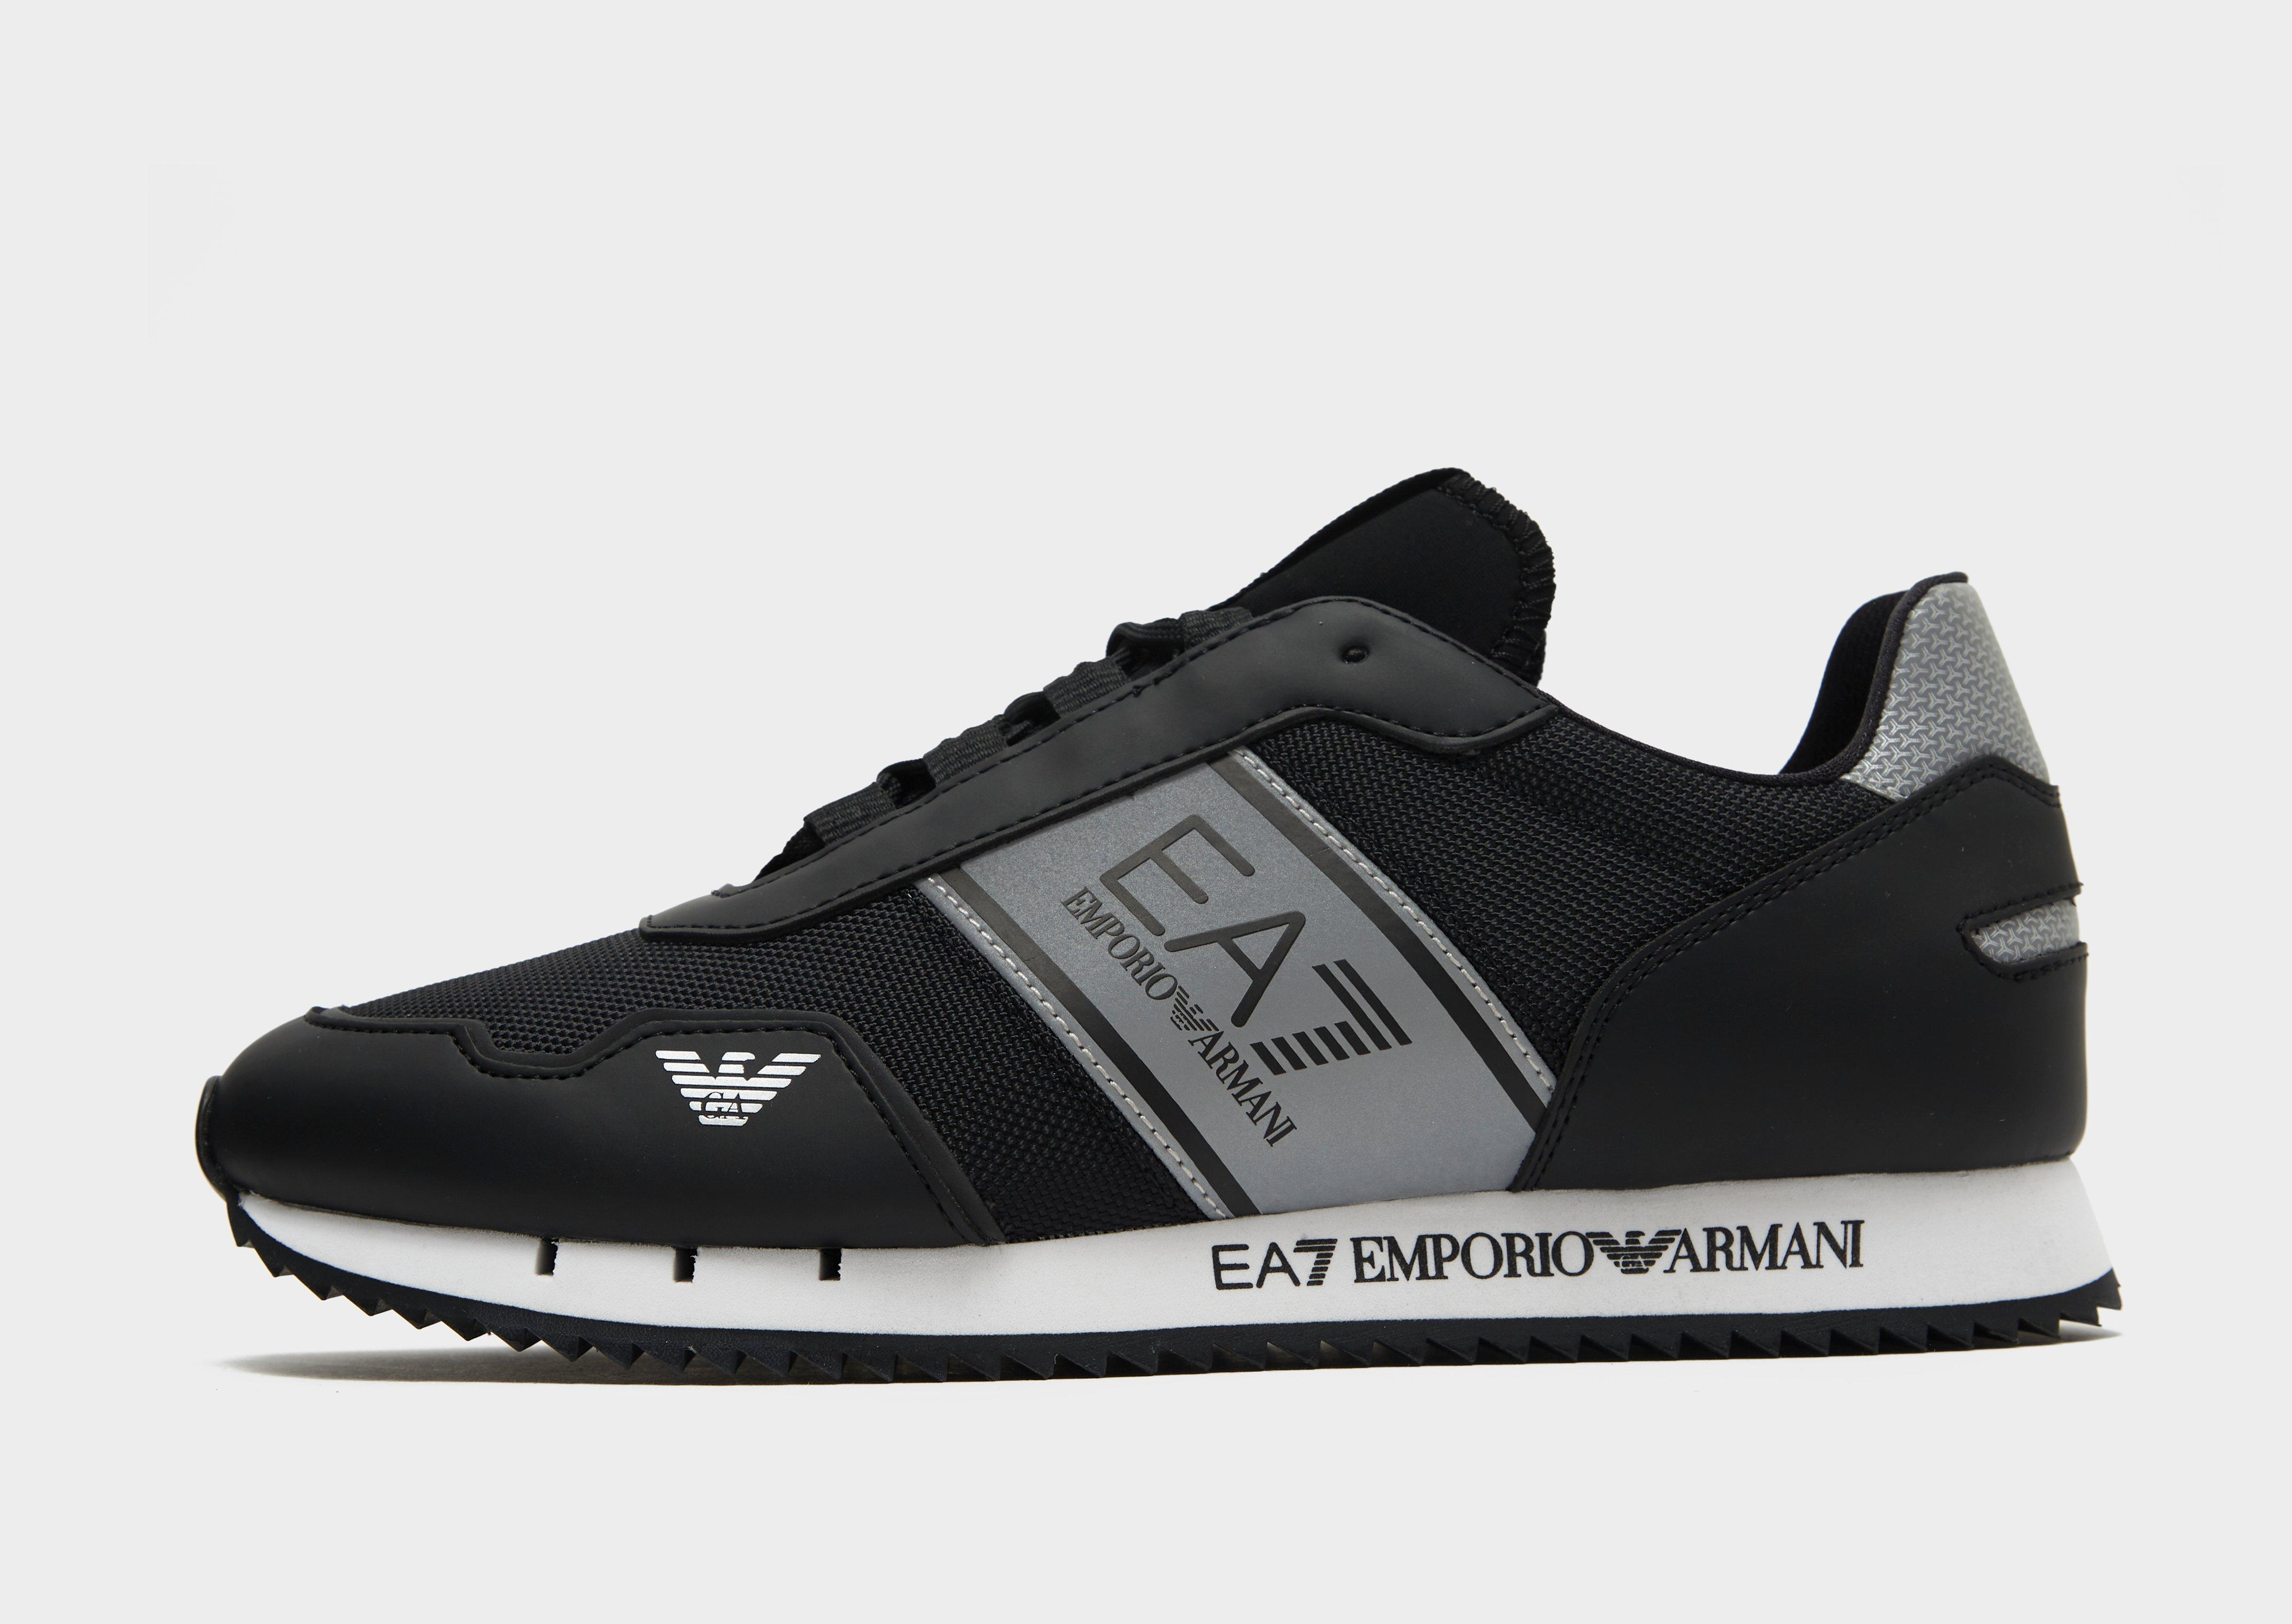 Scarpe Emporio Armani EA7 Black And White Vintage Sneakers Da Uomo ...